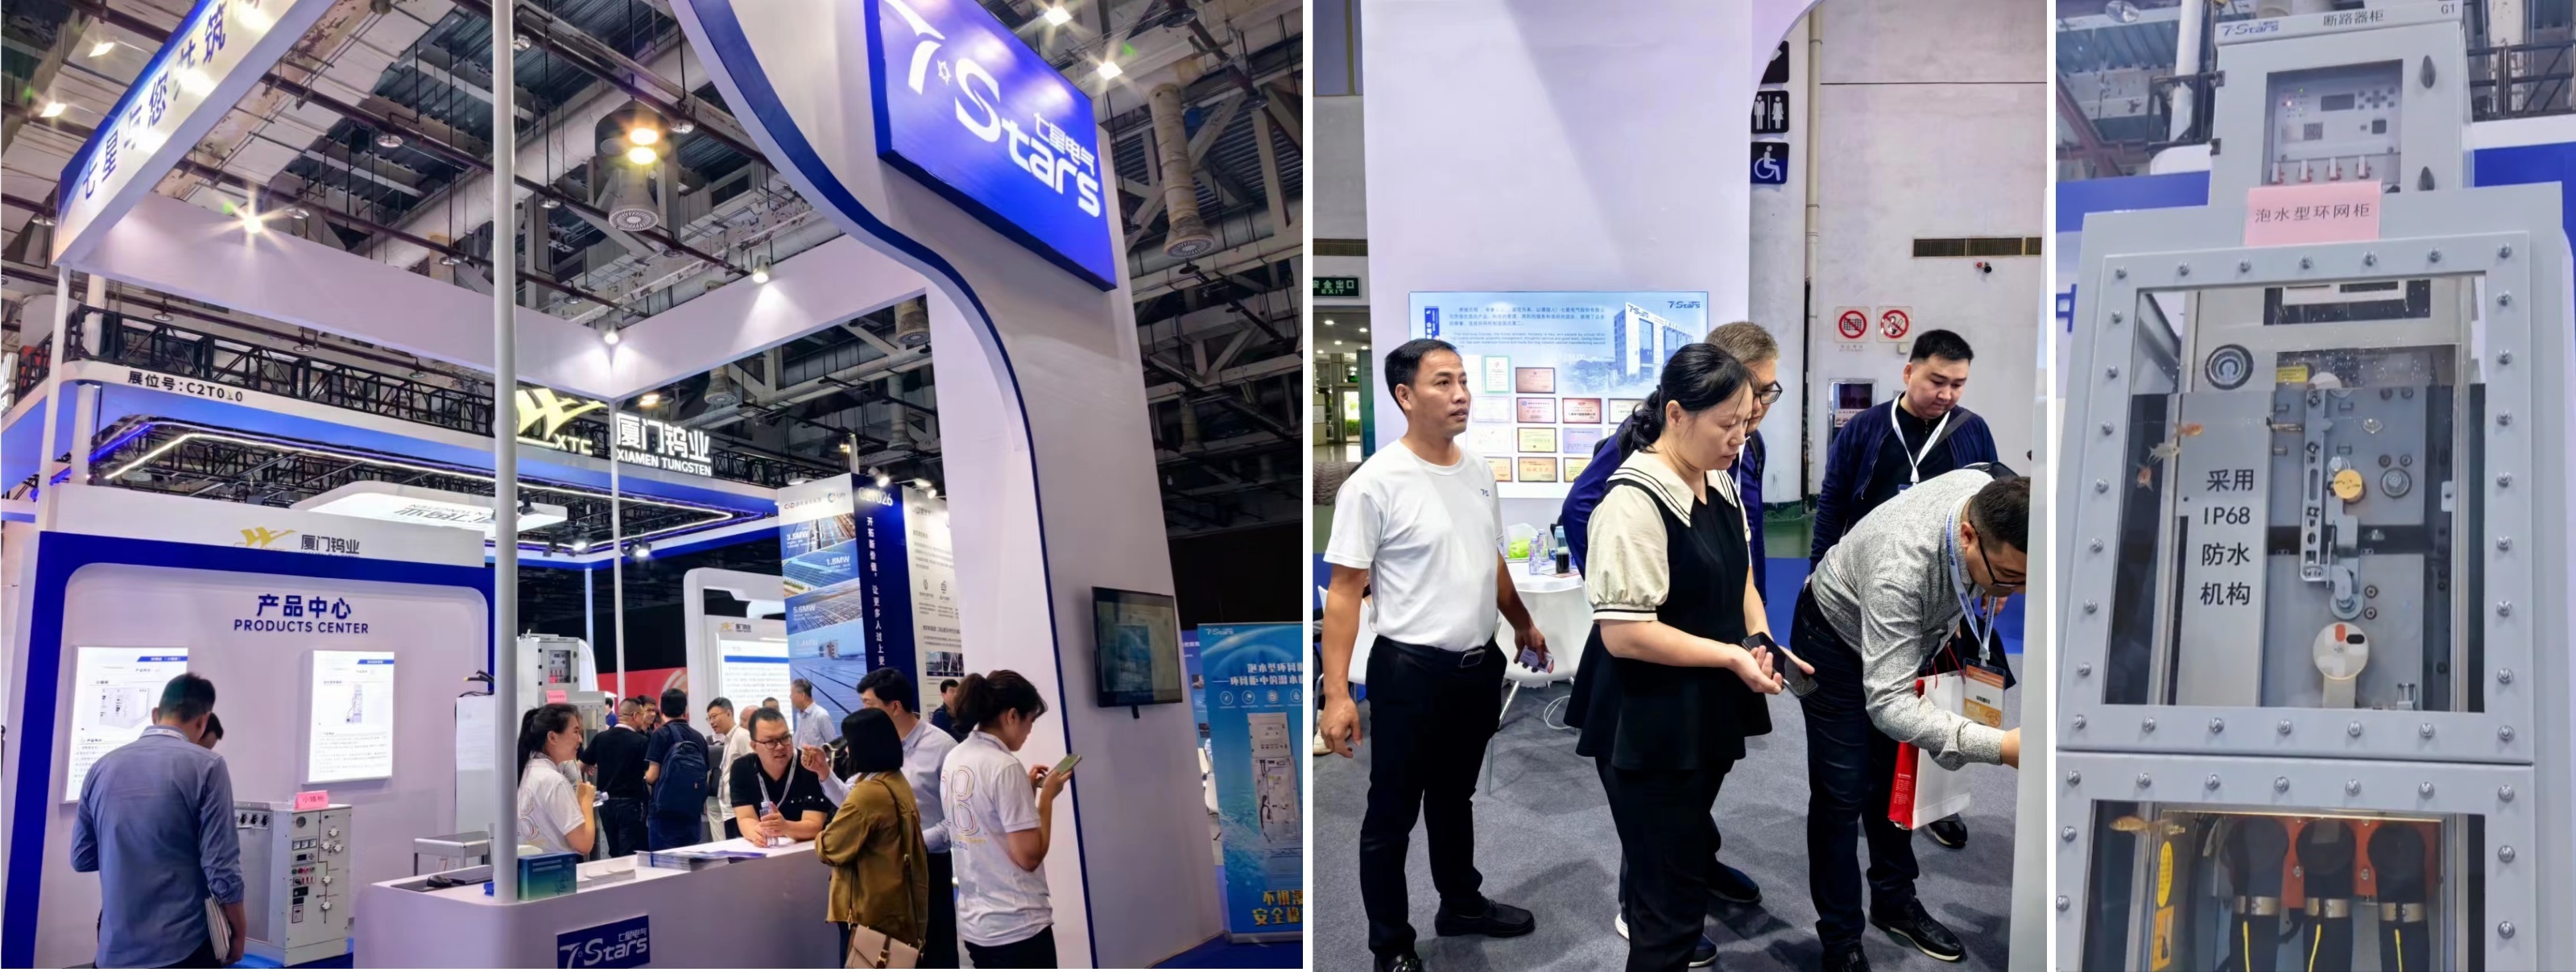 Цюаньчжоу Seven Stars Electric принял участие в 24-й конференции Азиатско-Тихоокеанской электротехнической ассоциации в Сямыне в октябре.